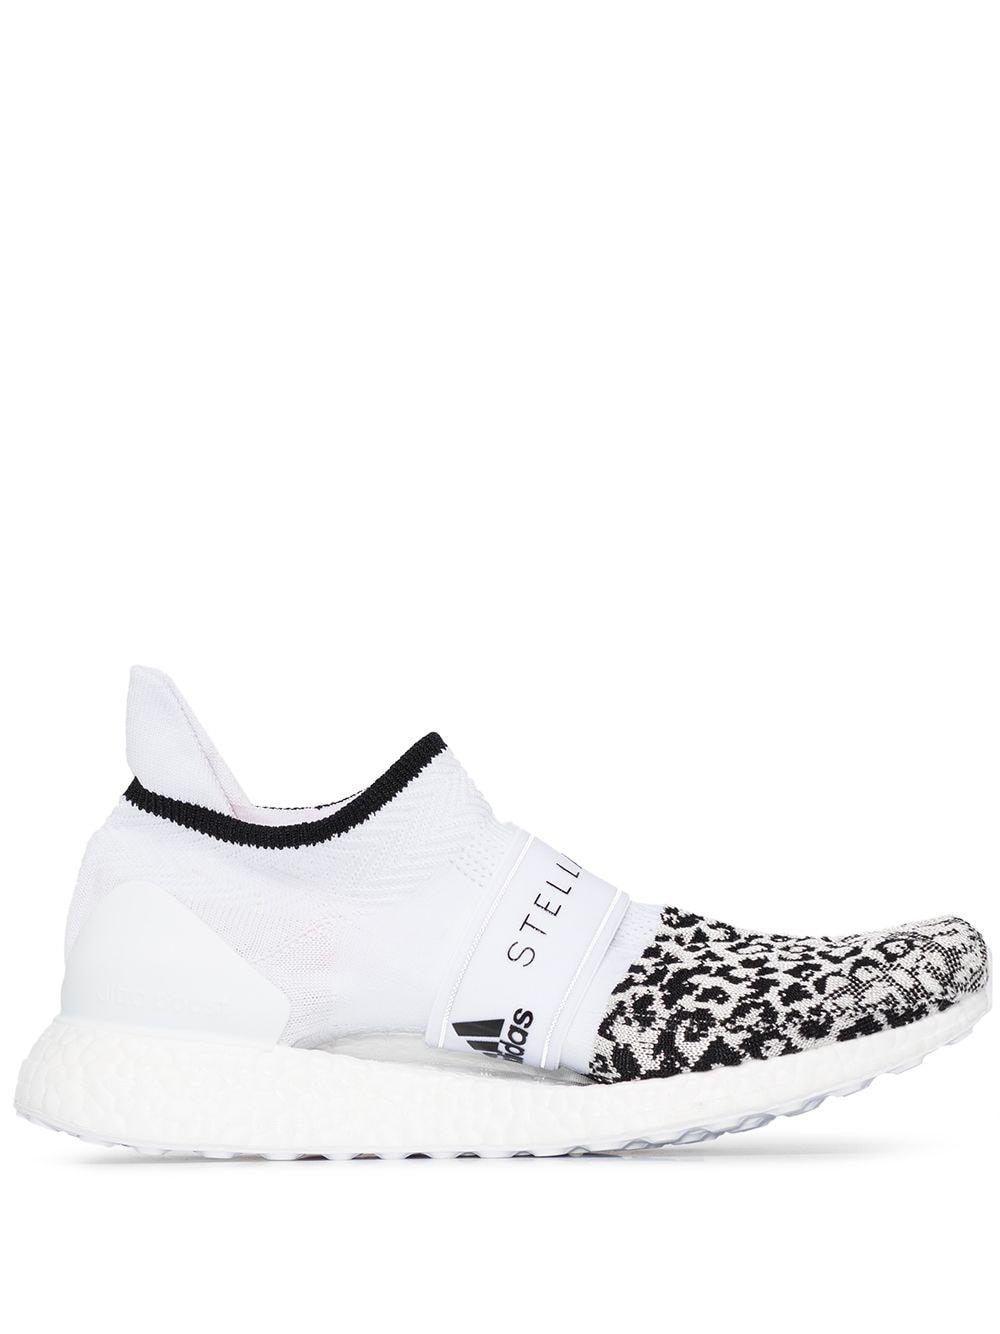 adidas By Stella McCartney Ultraboost Leopard-print Sneakers in White | Lyst